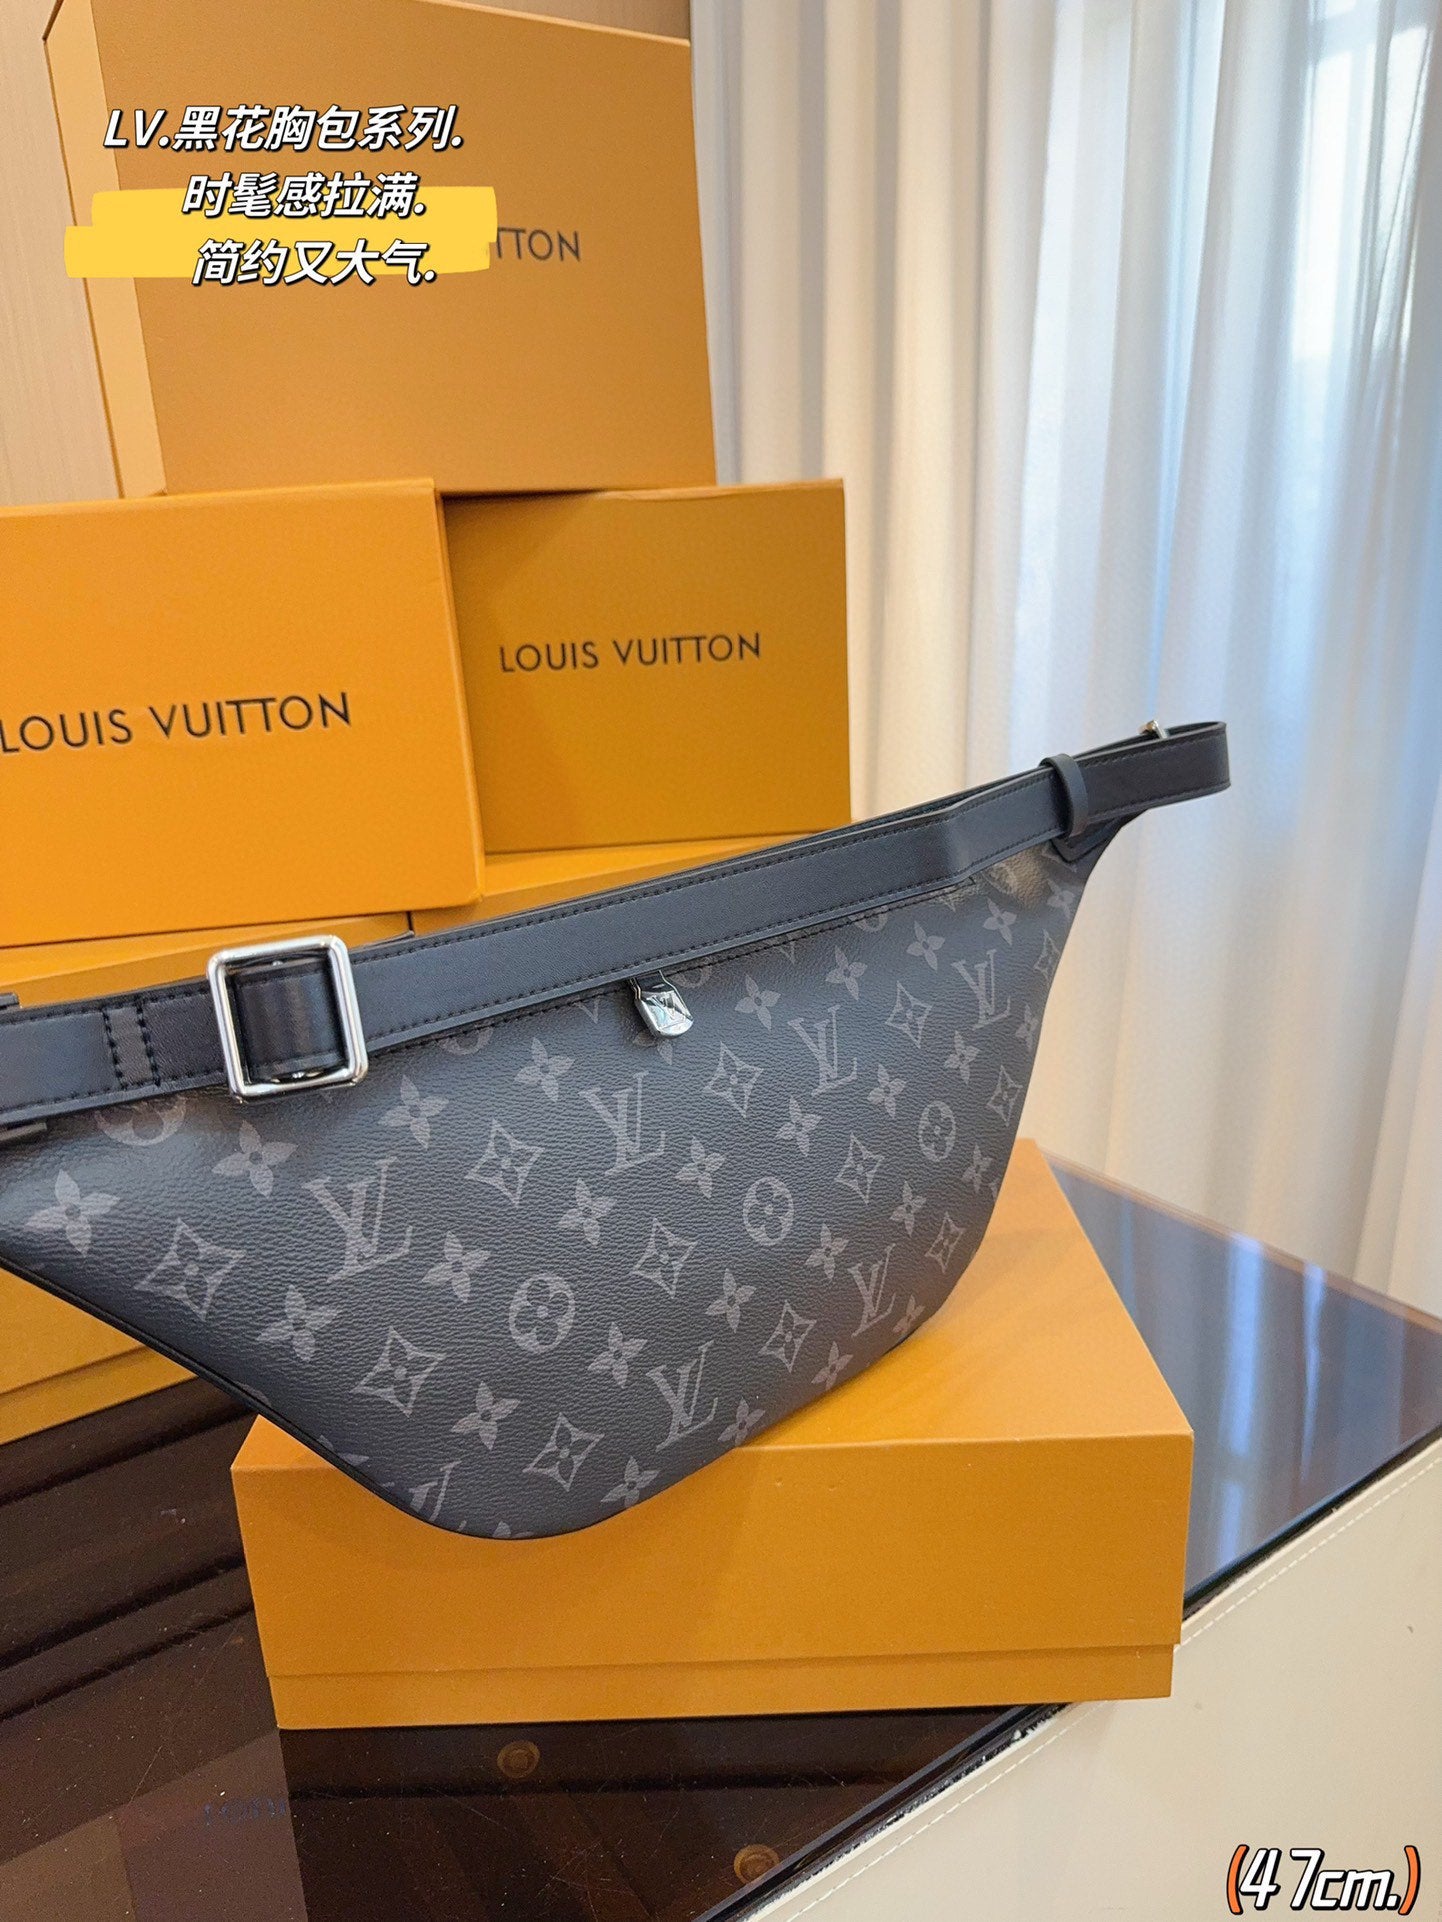 Louis vuitton handbags ( bumbag waistbag)